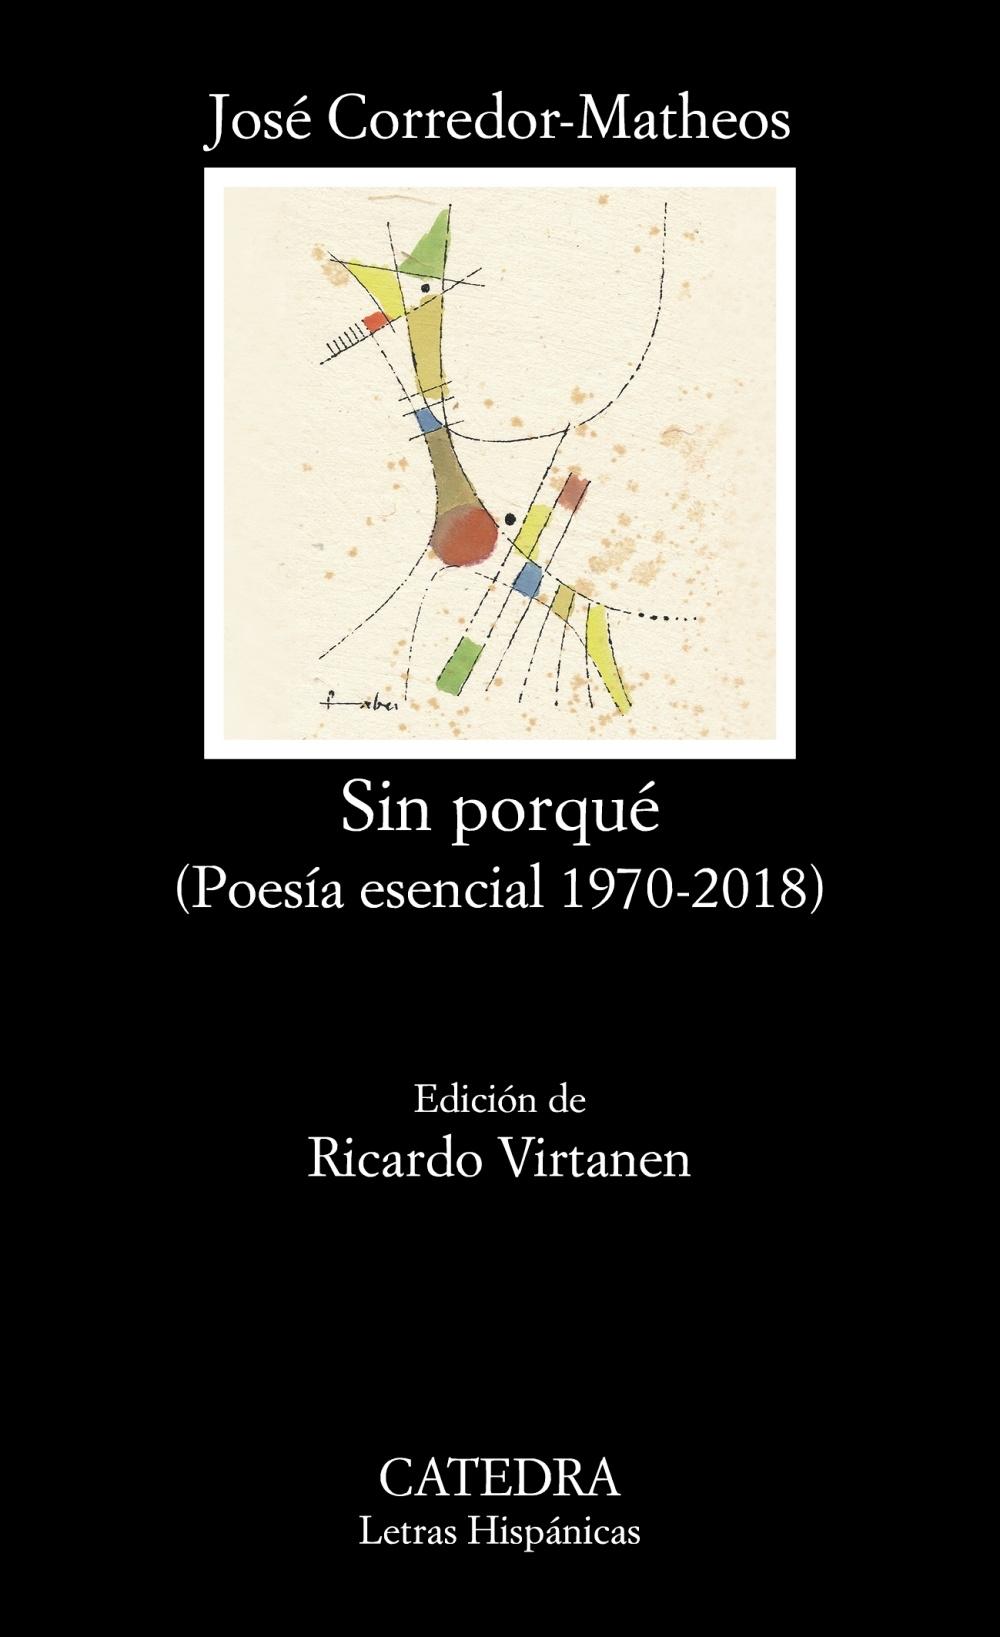 Sin porqué "(Poesía esencial 1970-2018)". 